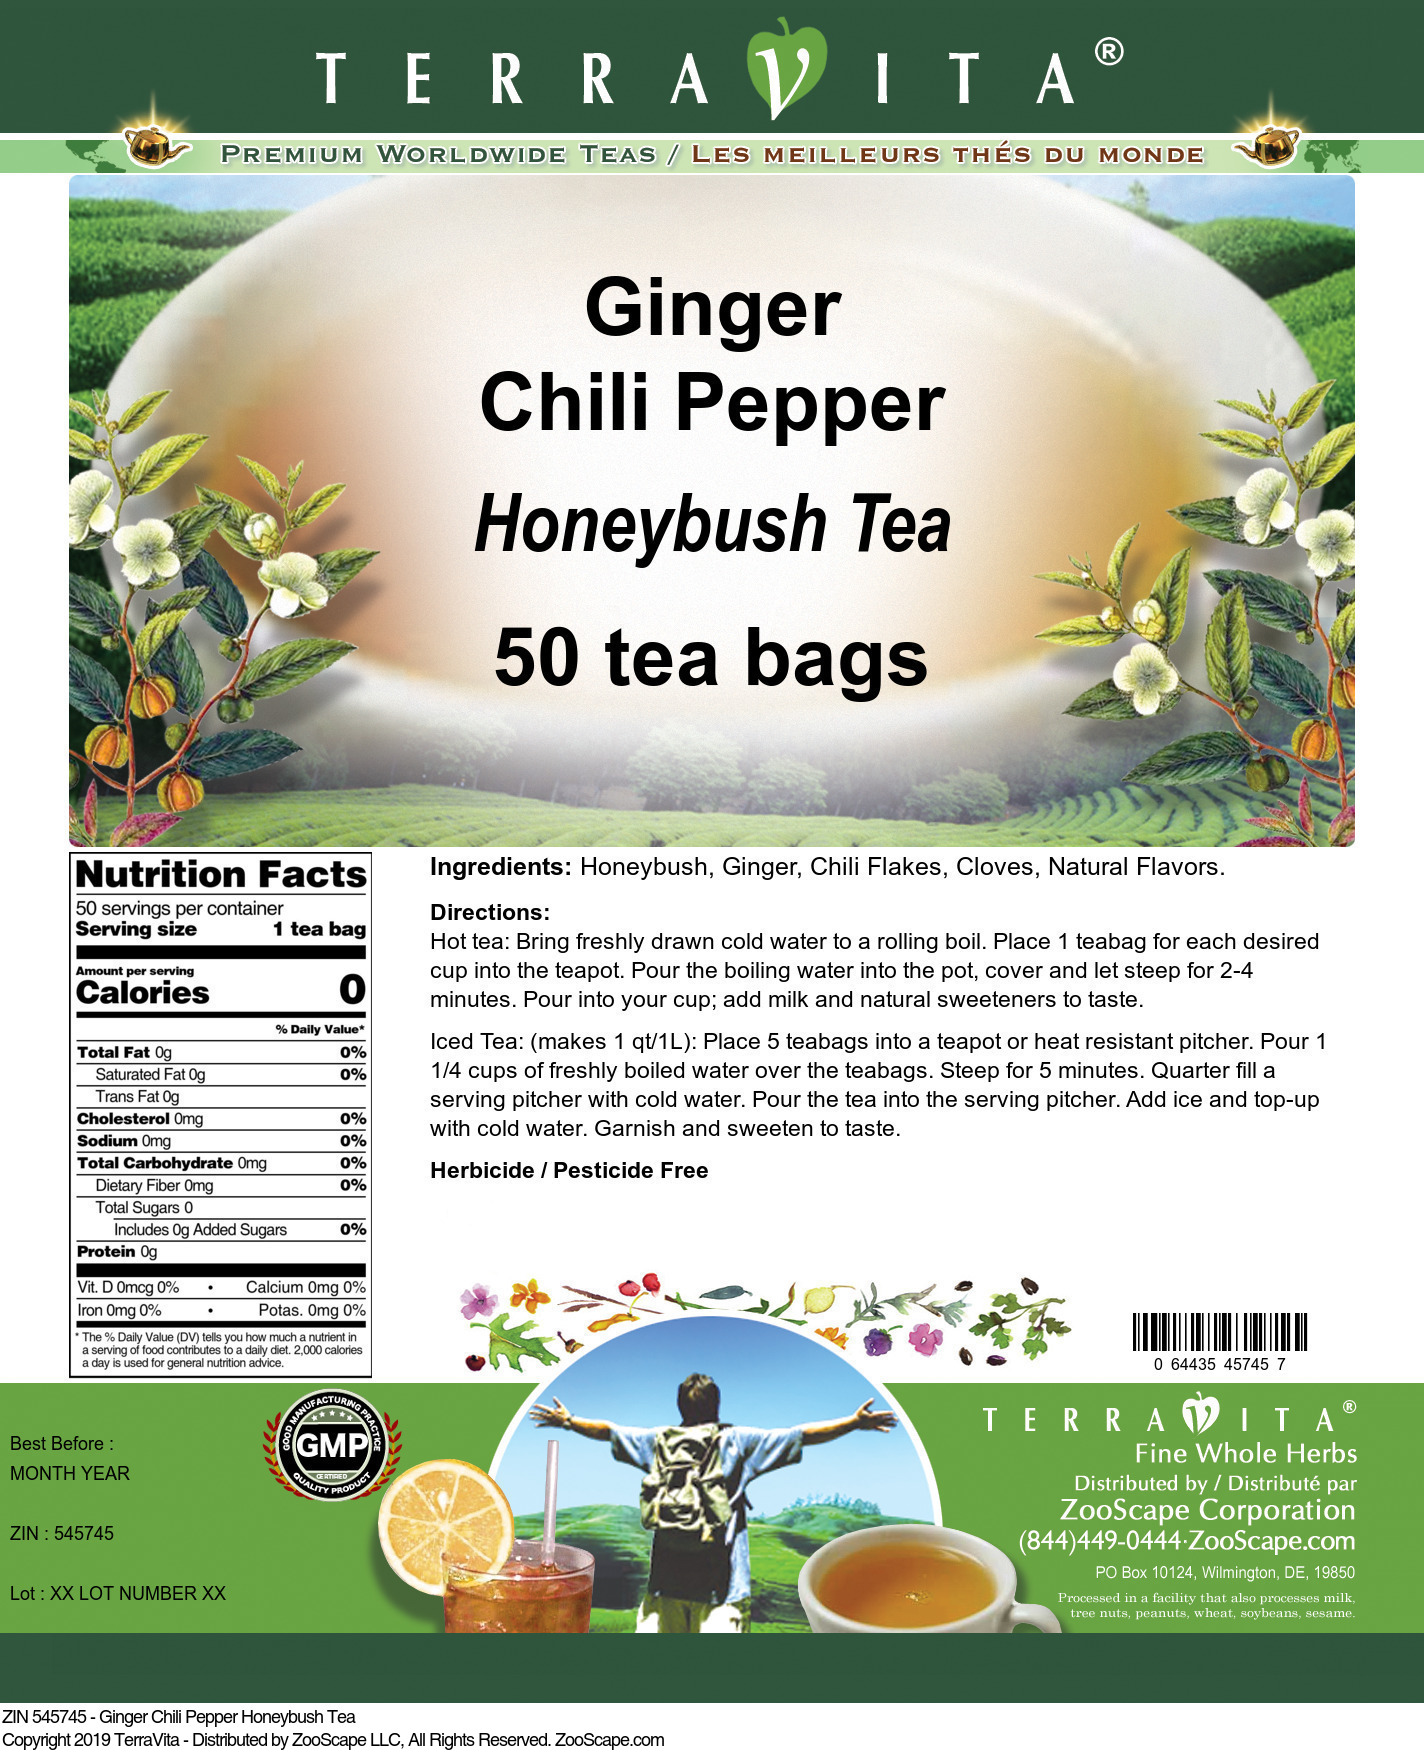 Ginger Chili Pepper Honeybush Tea - Label